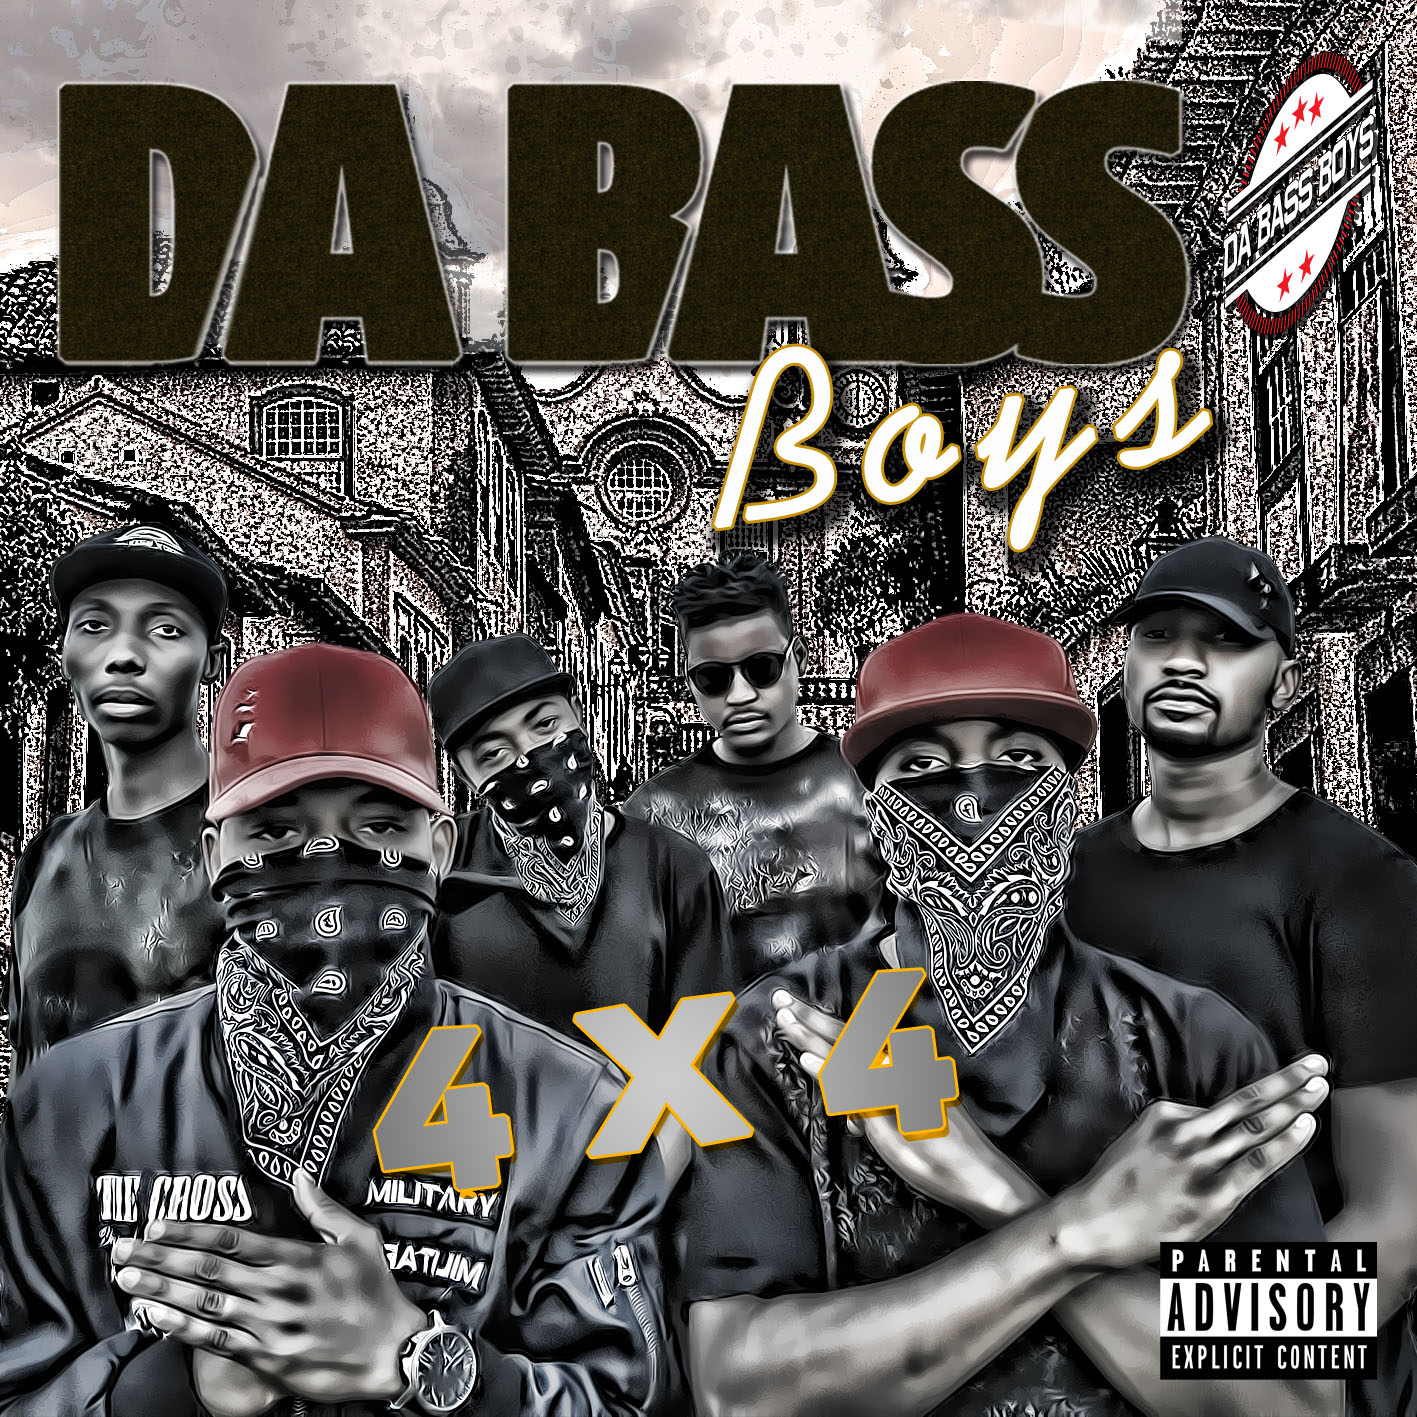 Bass boys